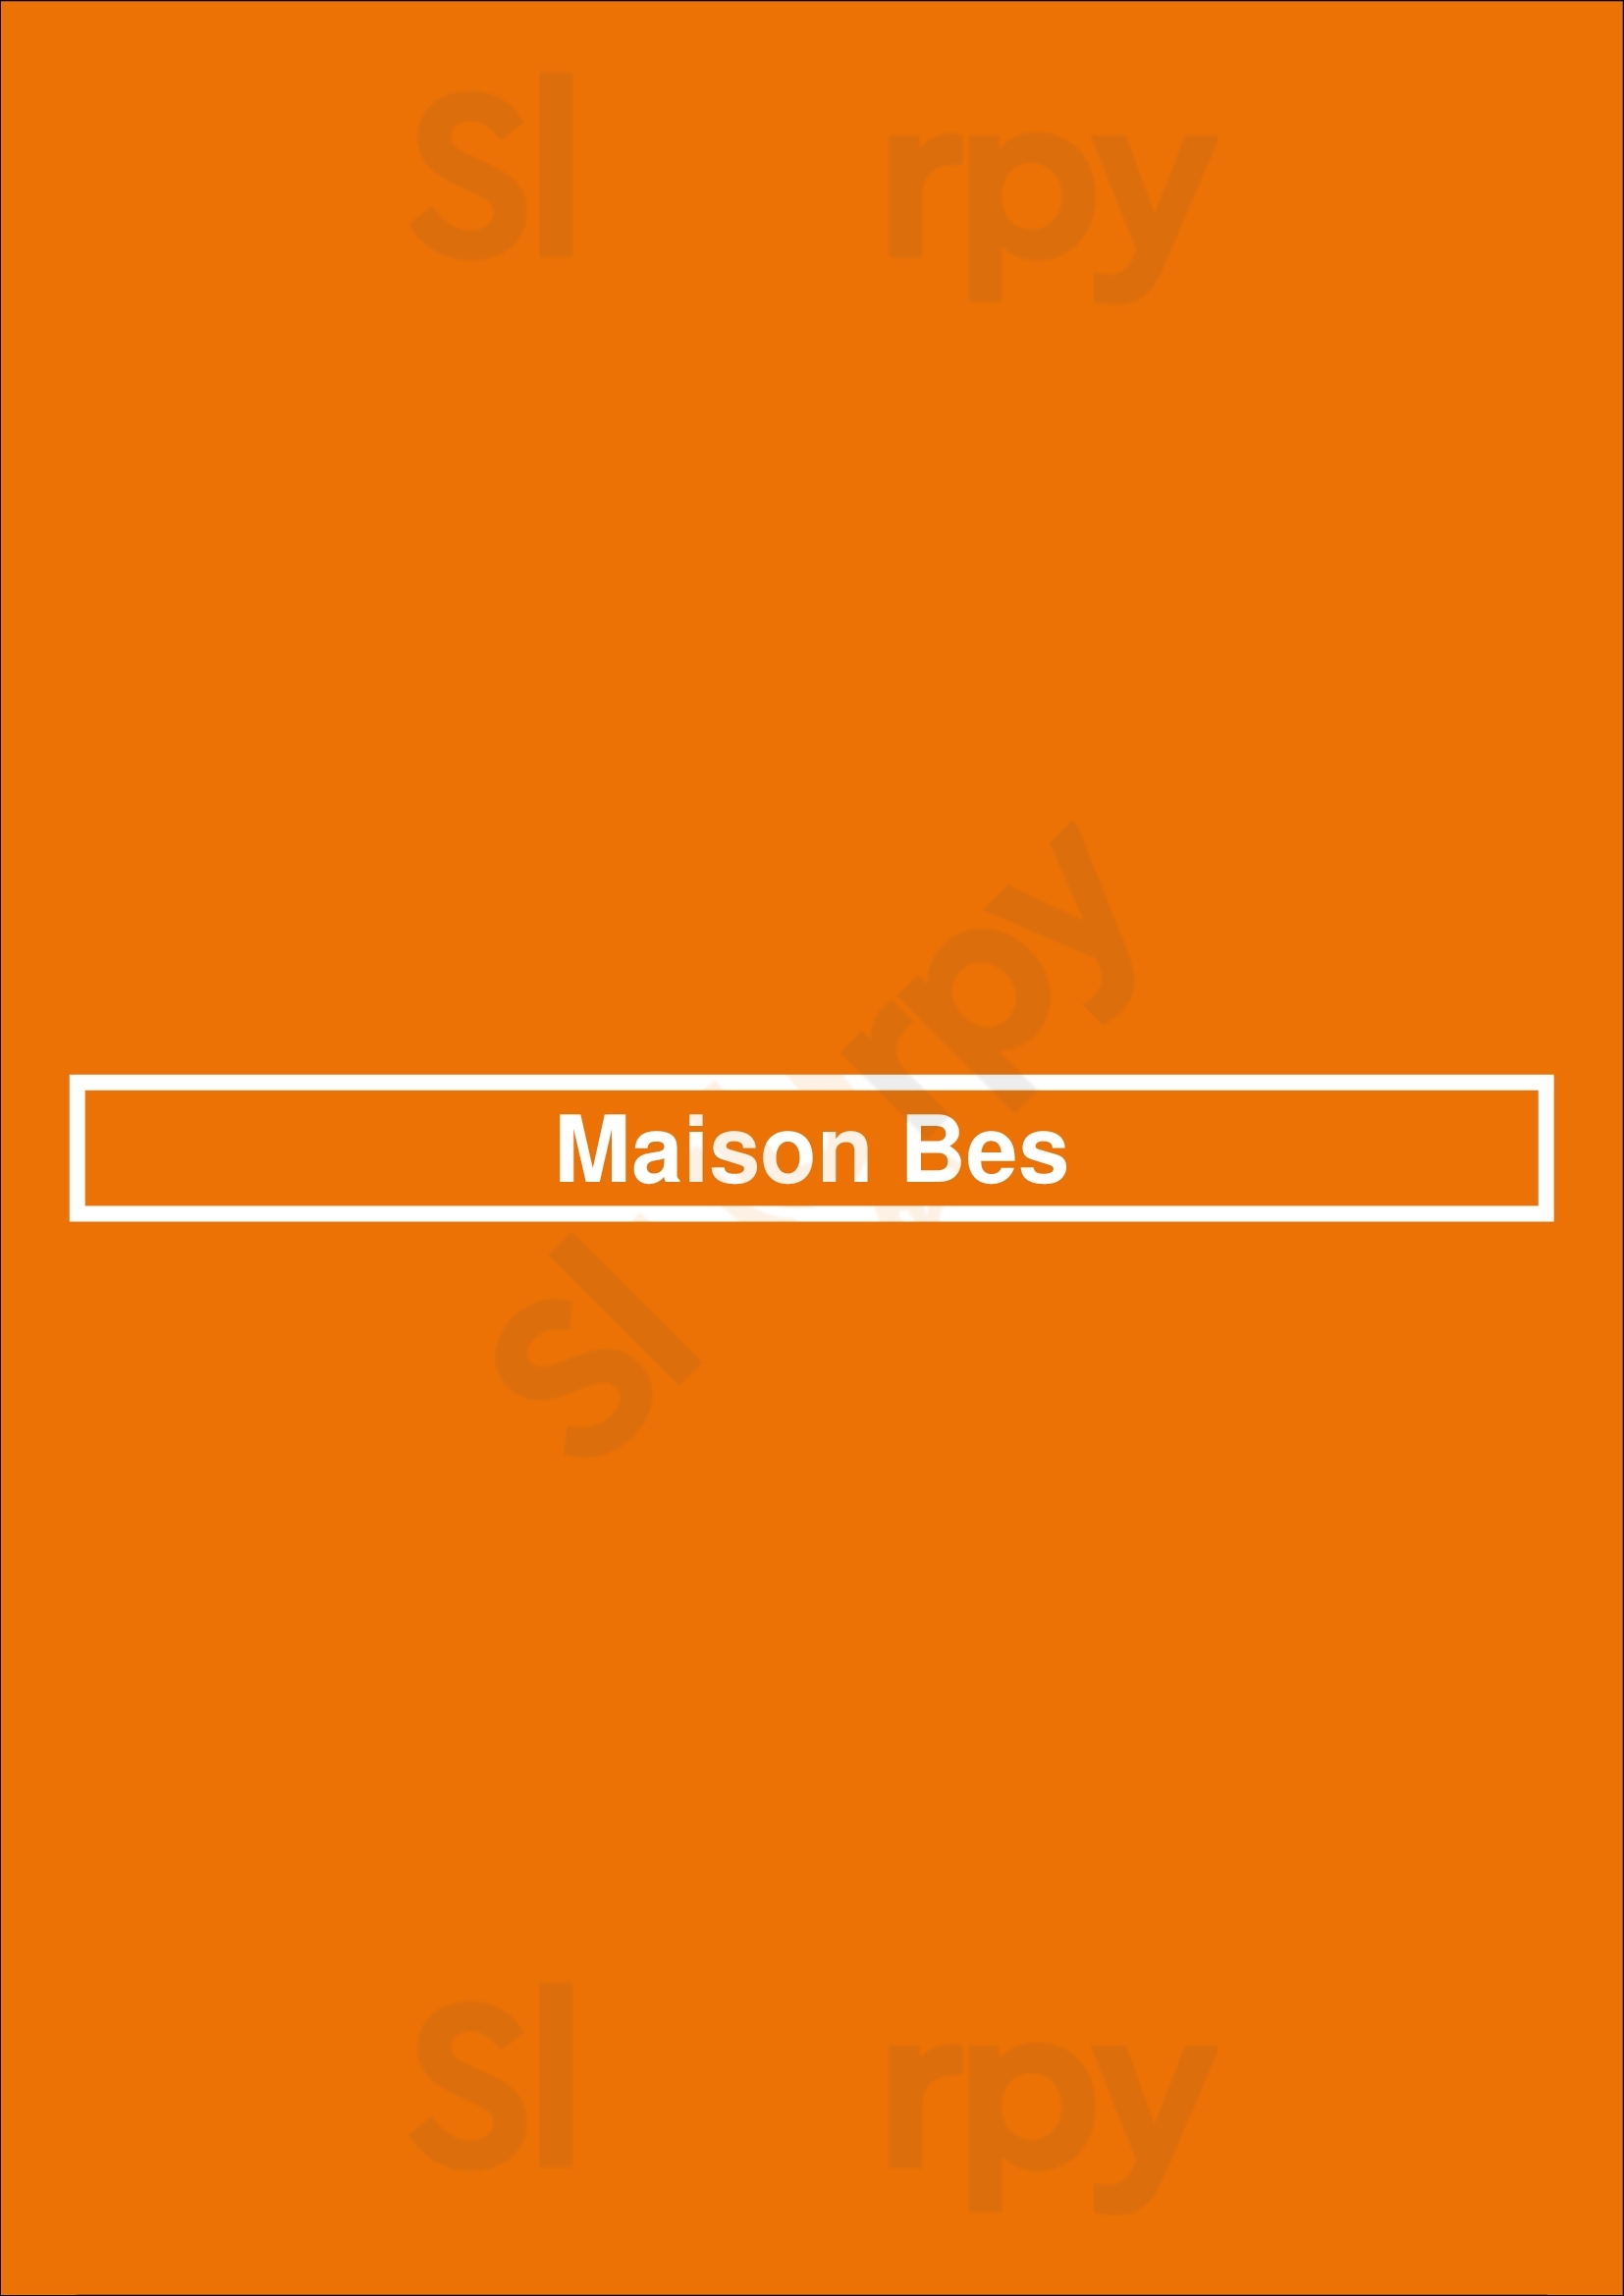 Maison Bes Paris Menu - 1